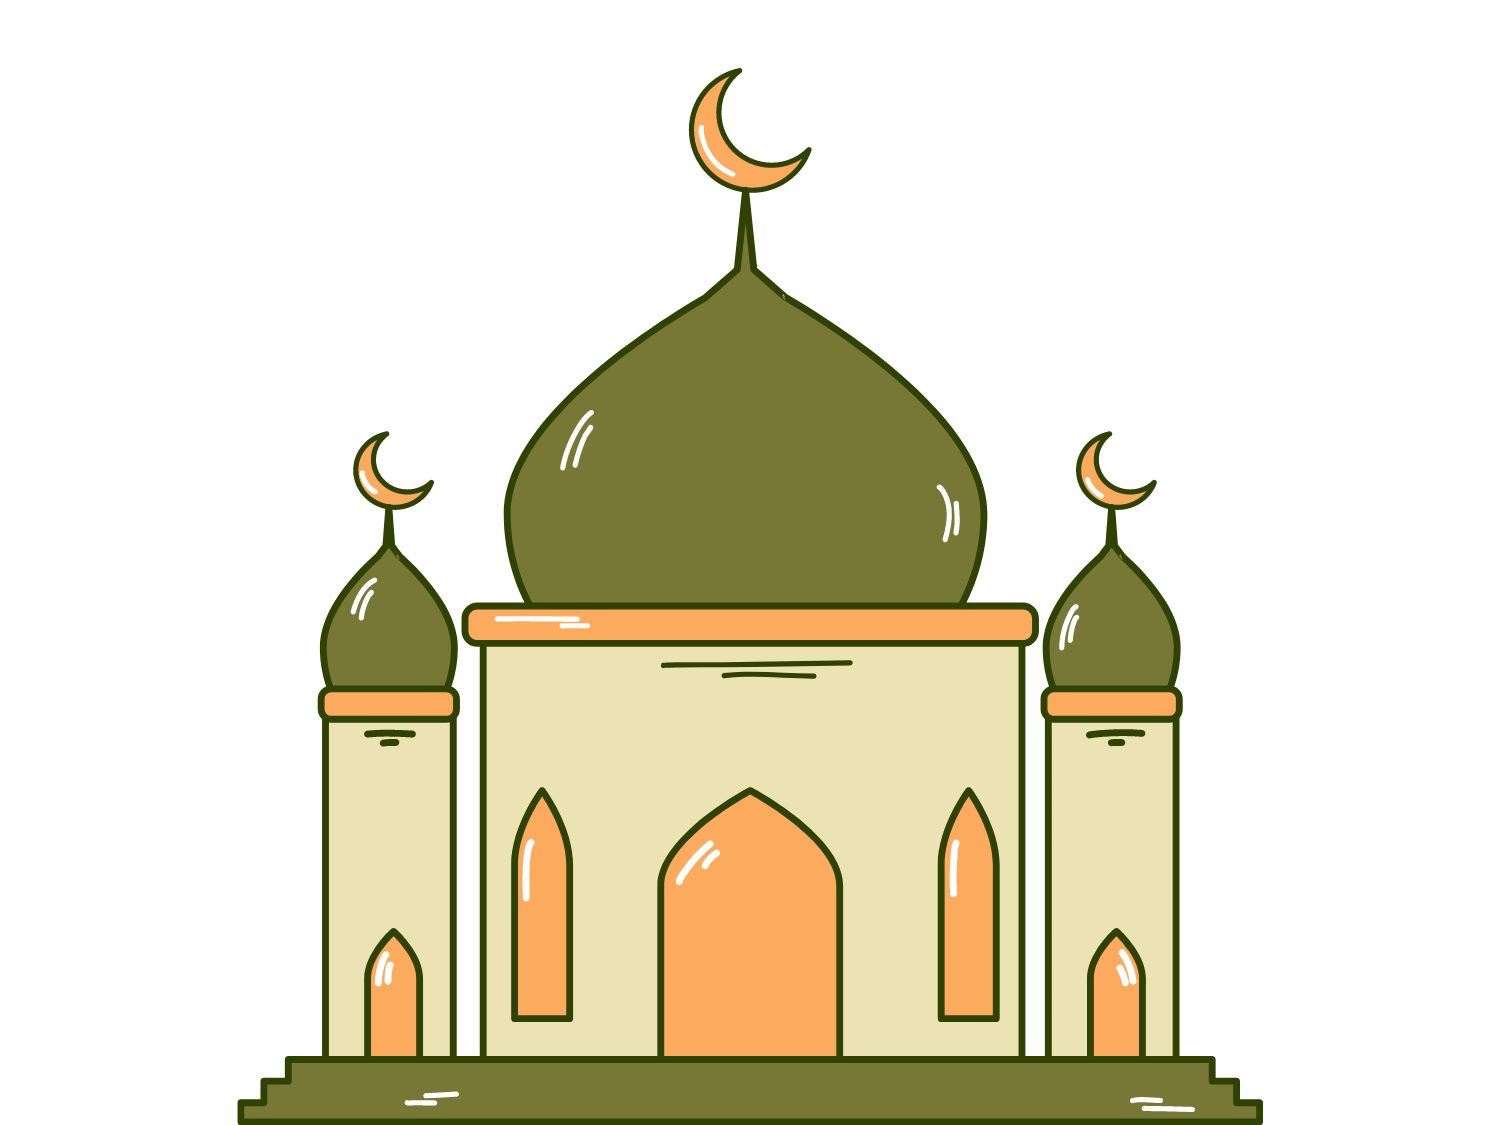 Gambar Masjid Yang Bagus